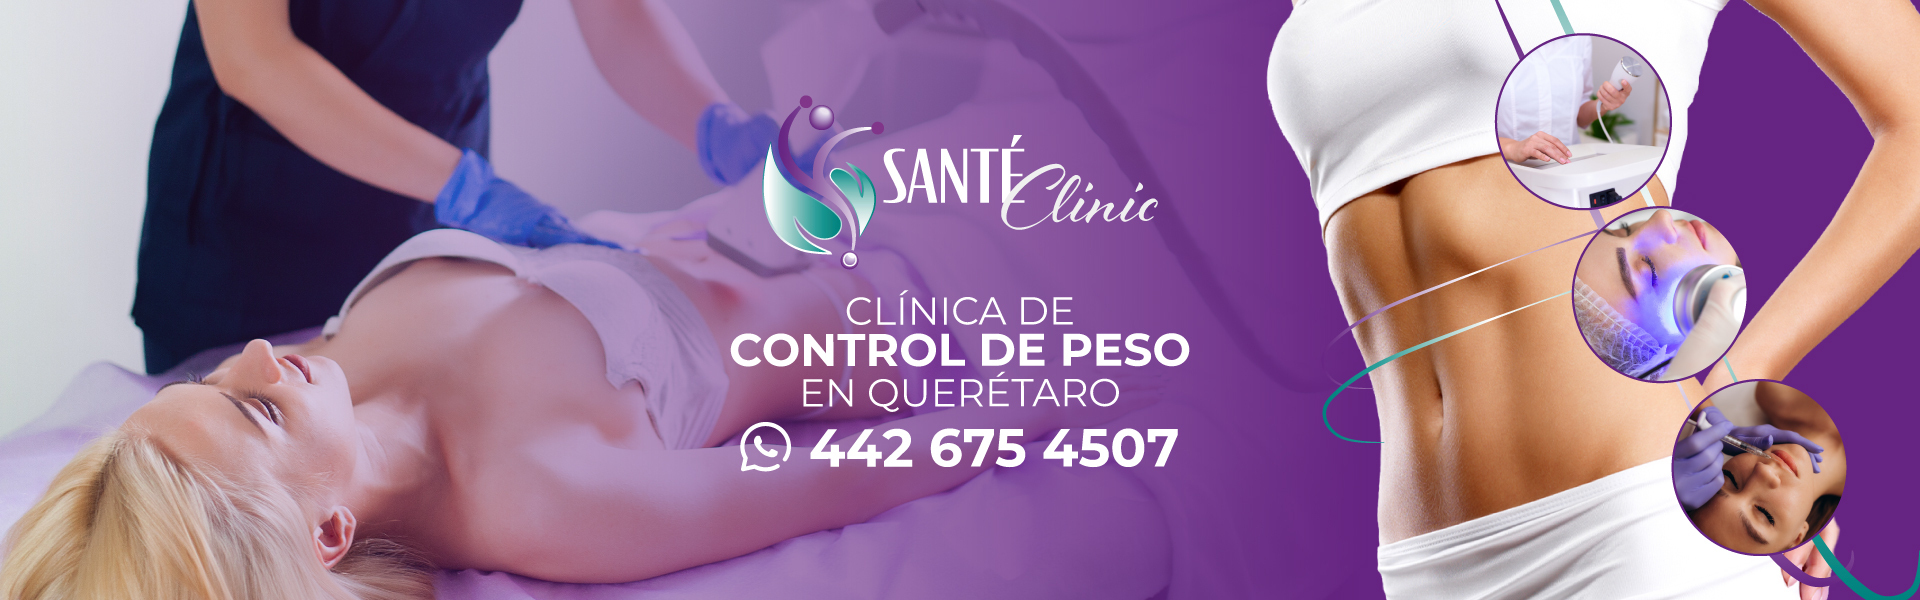 Mesoterapia en Querétaro – Santé Clinic